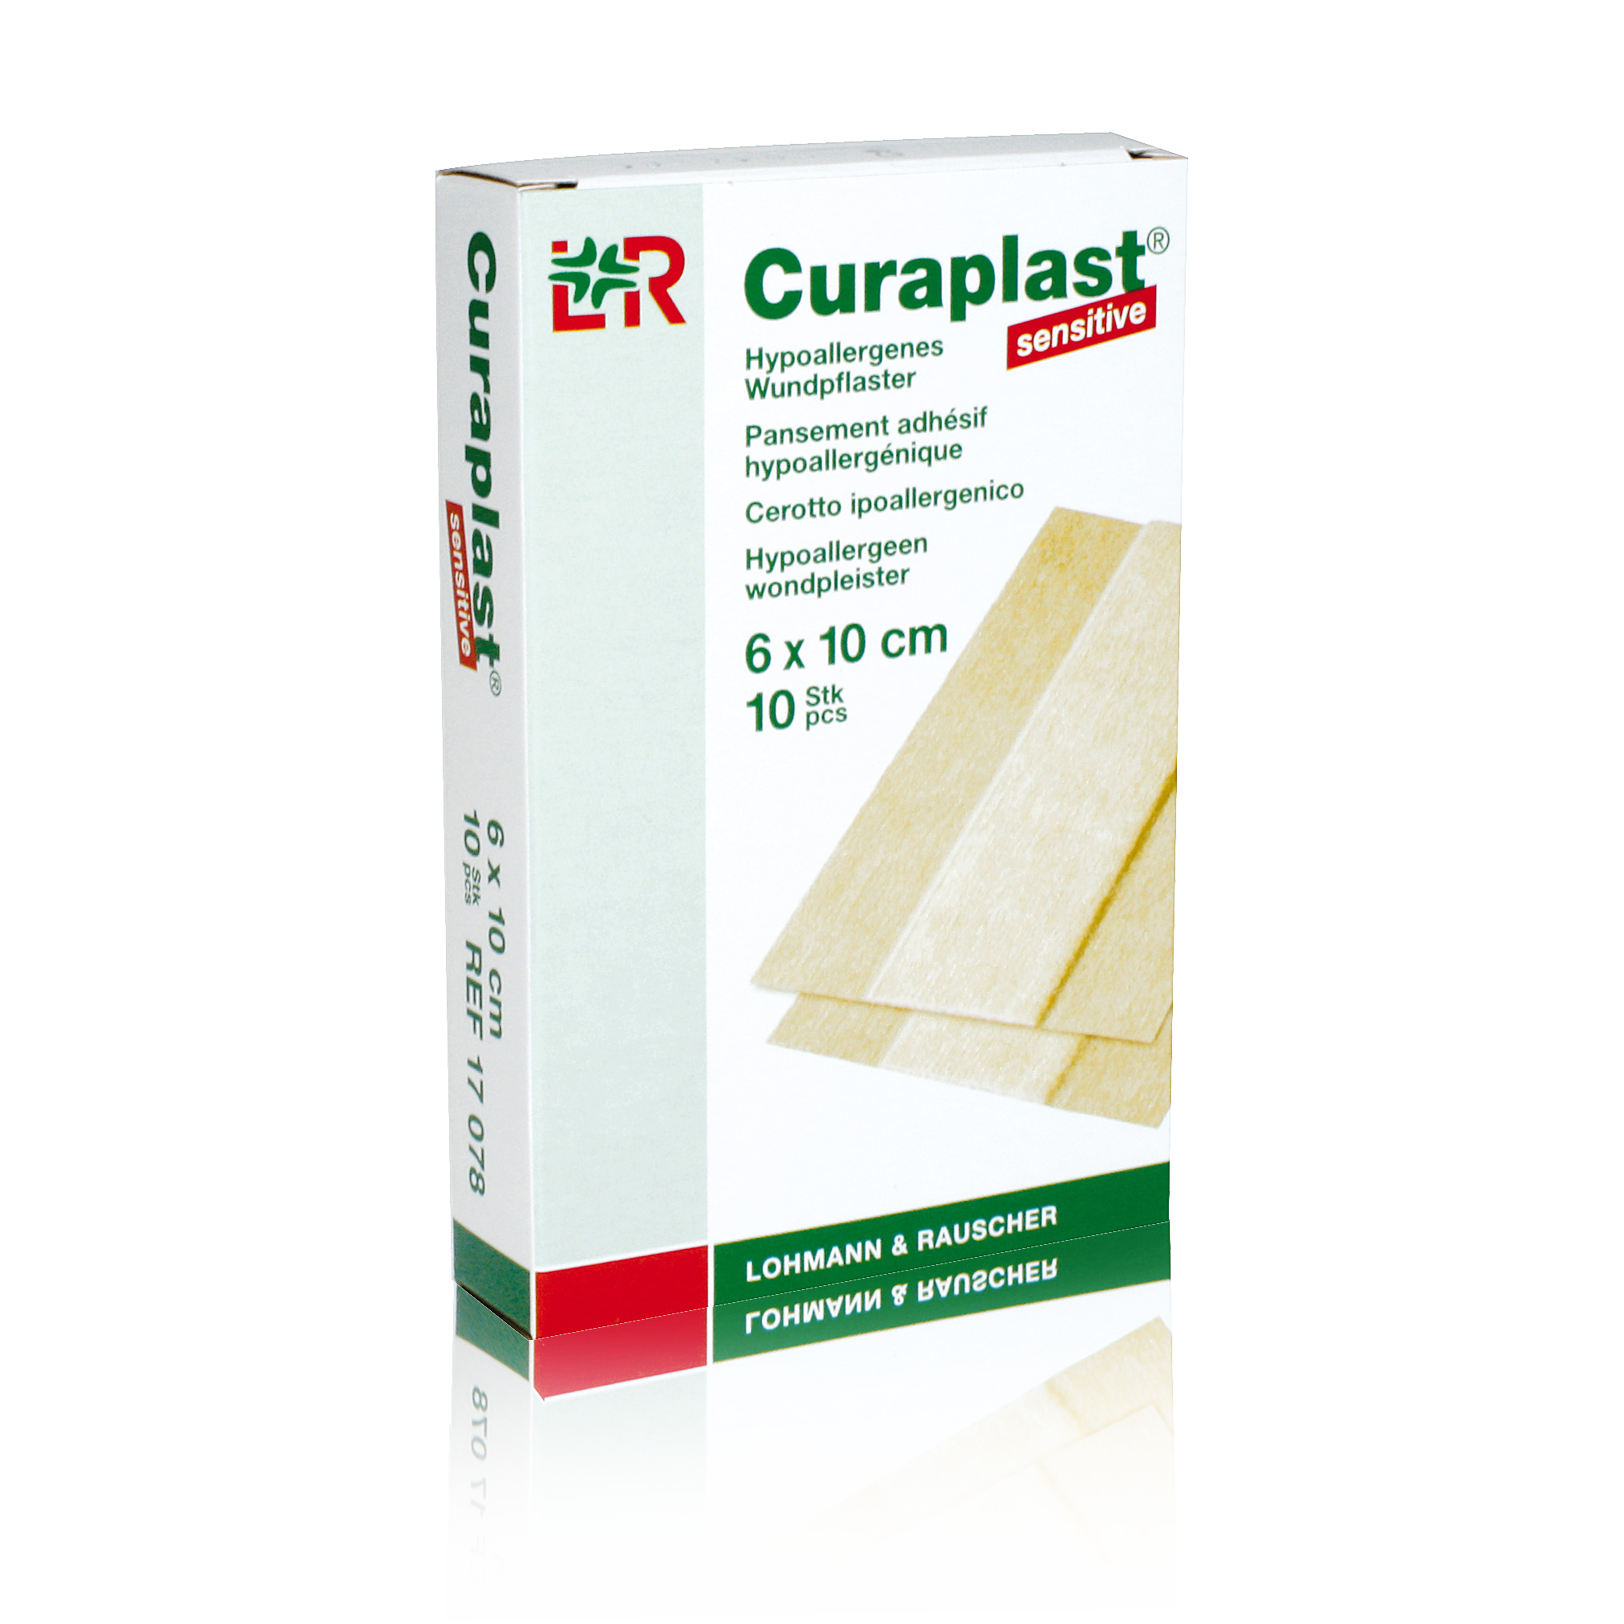 curaplast-sensitive-6-cm-x-10-cm-_11242